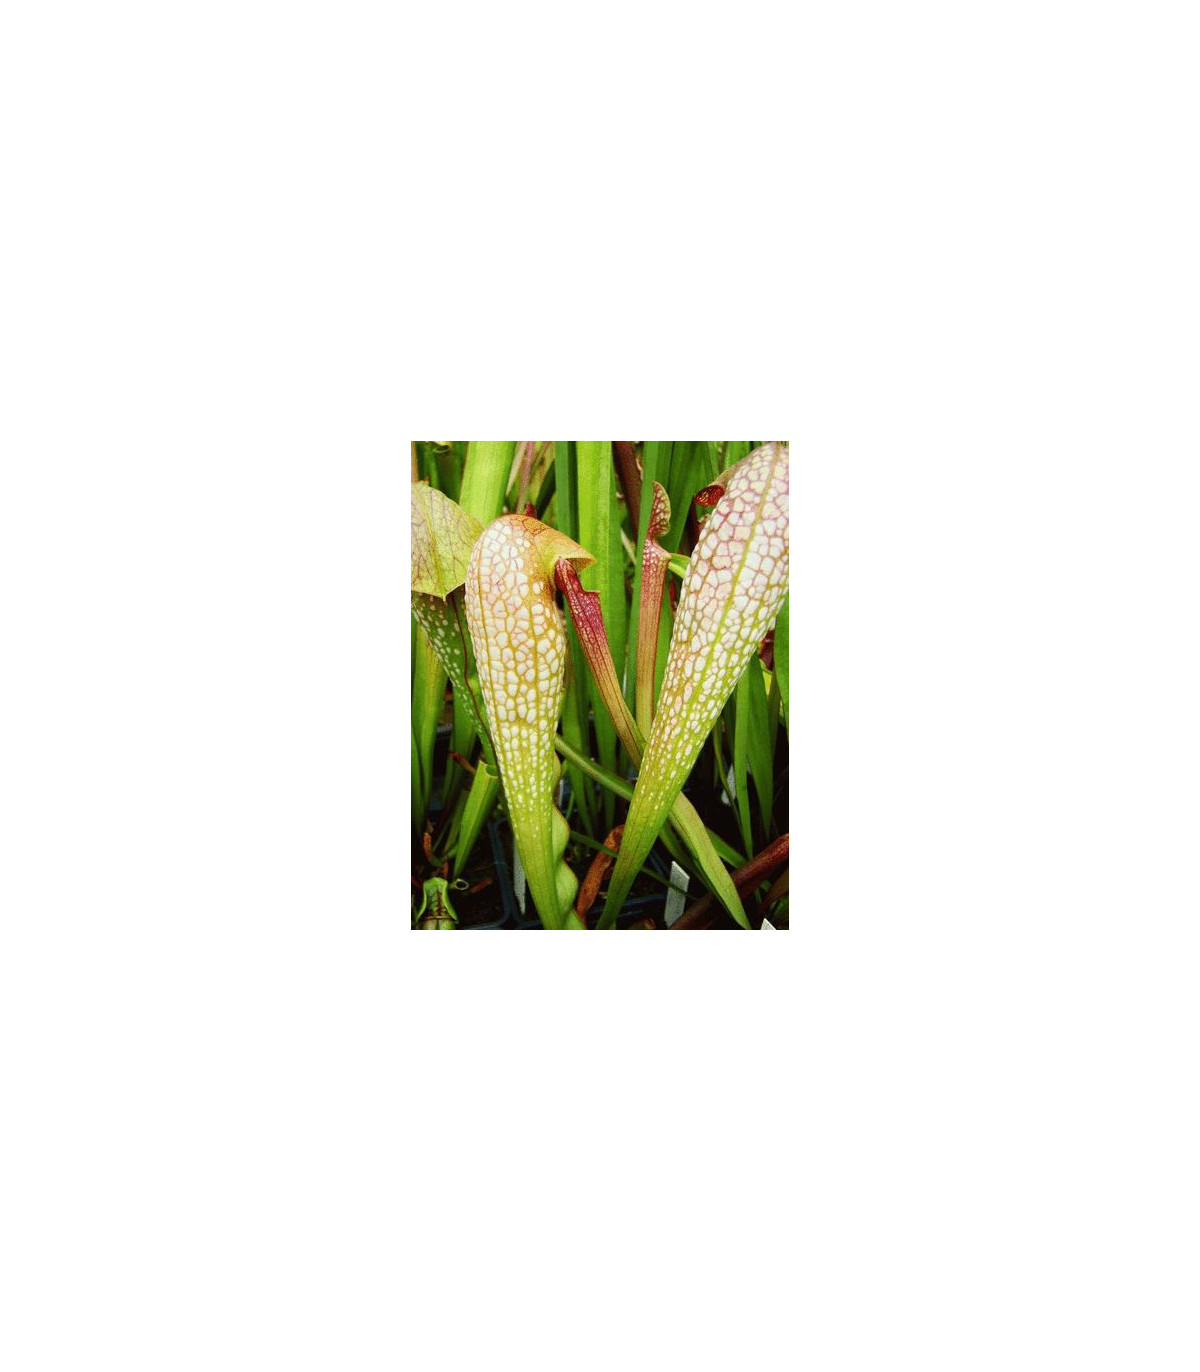 Špirlica privretá - saracénia - semená mäsožravky Špirlice - Sarracenia minor - 12 ks